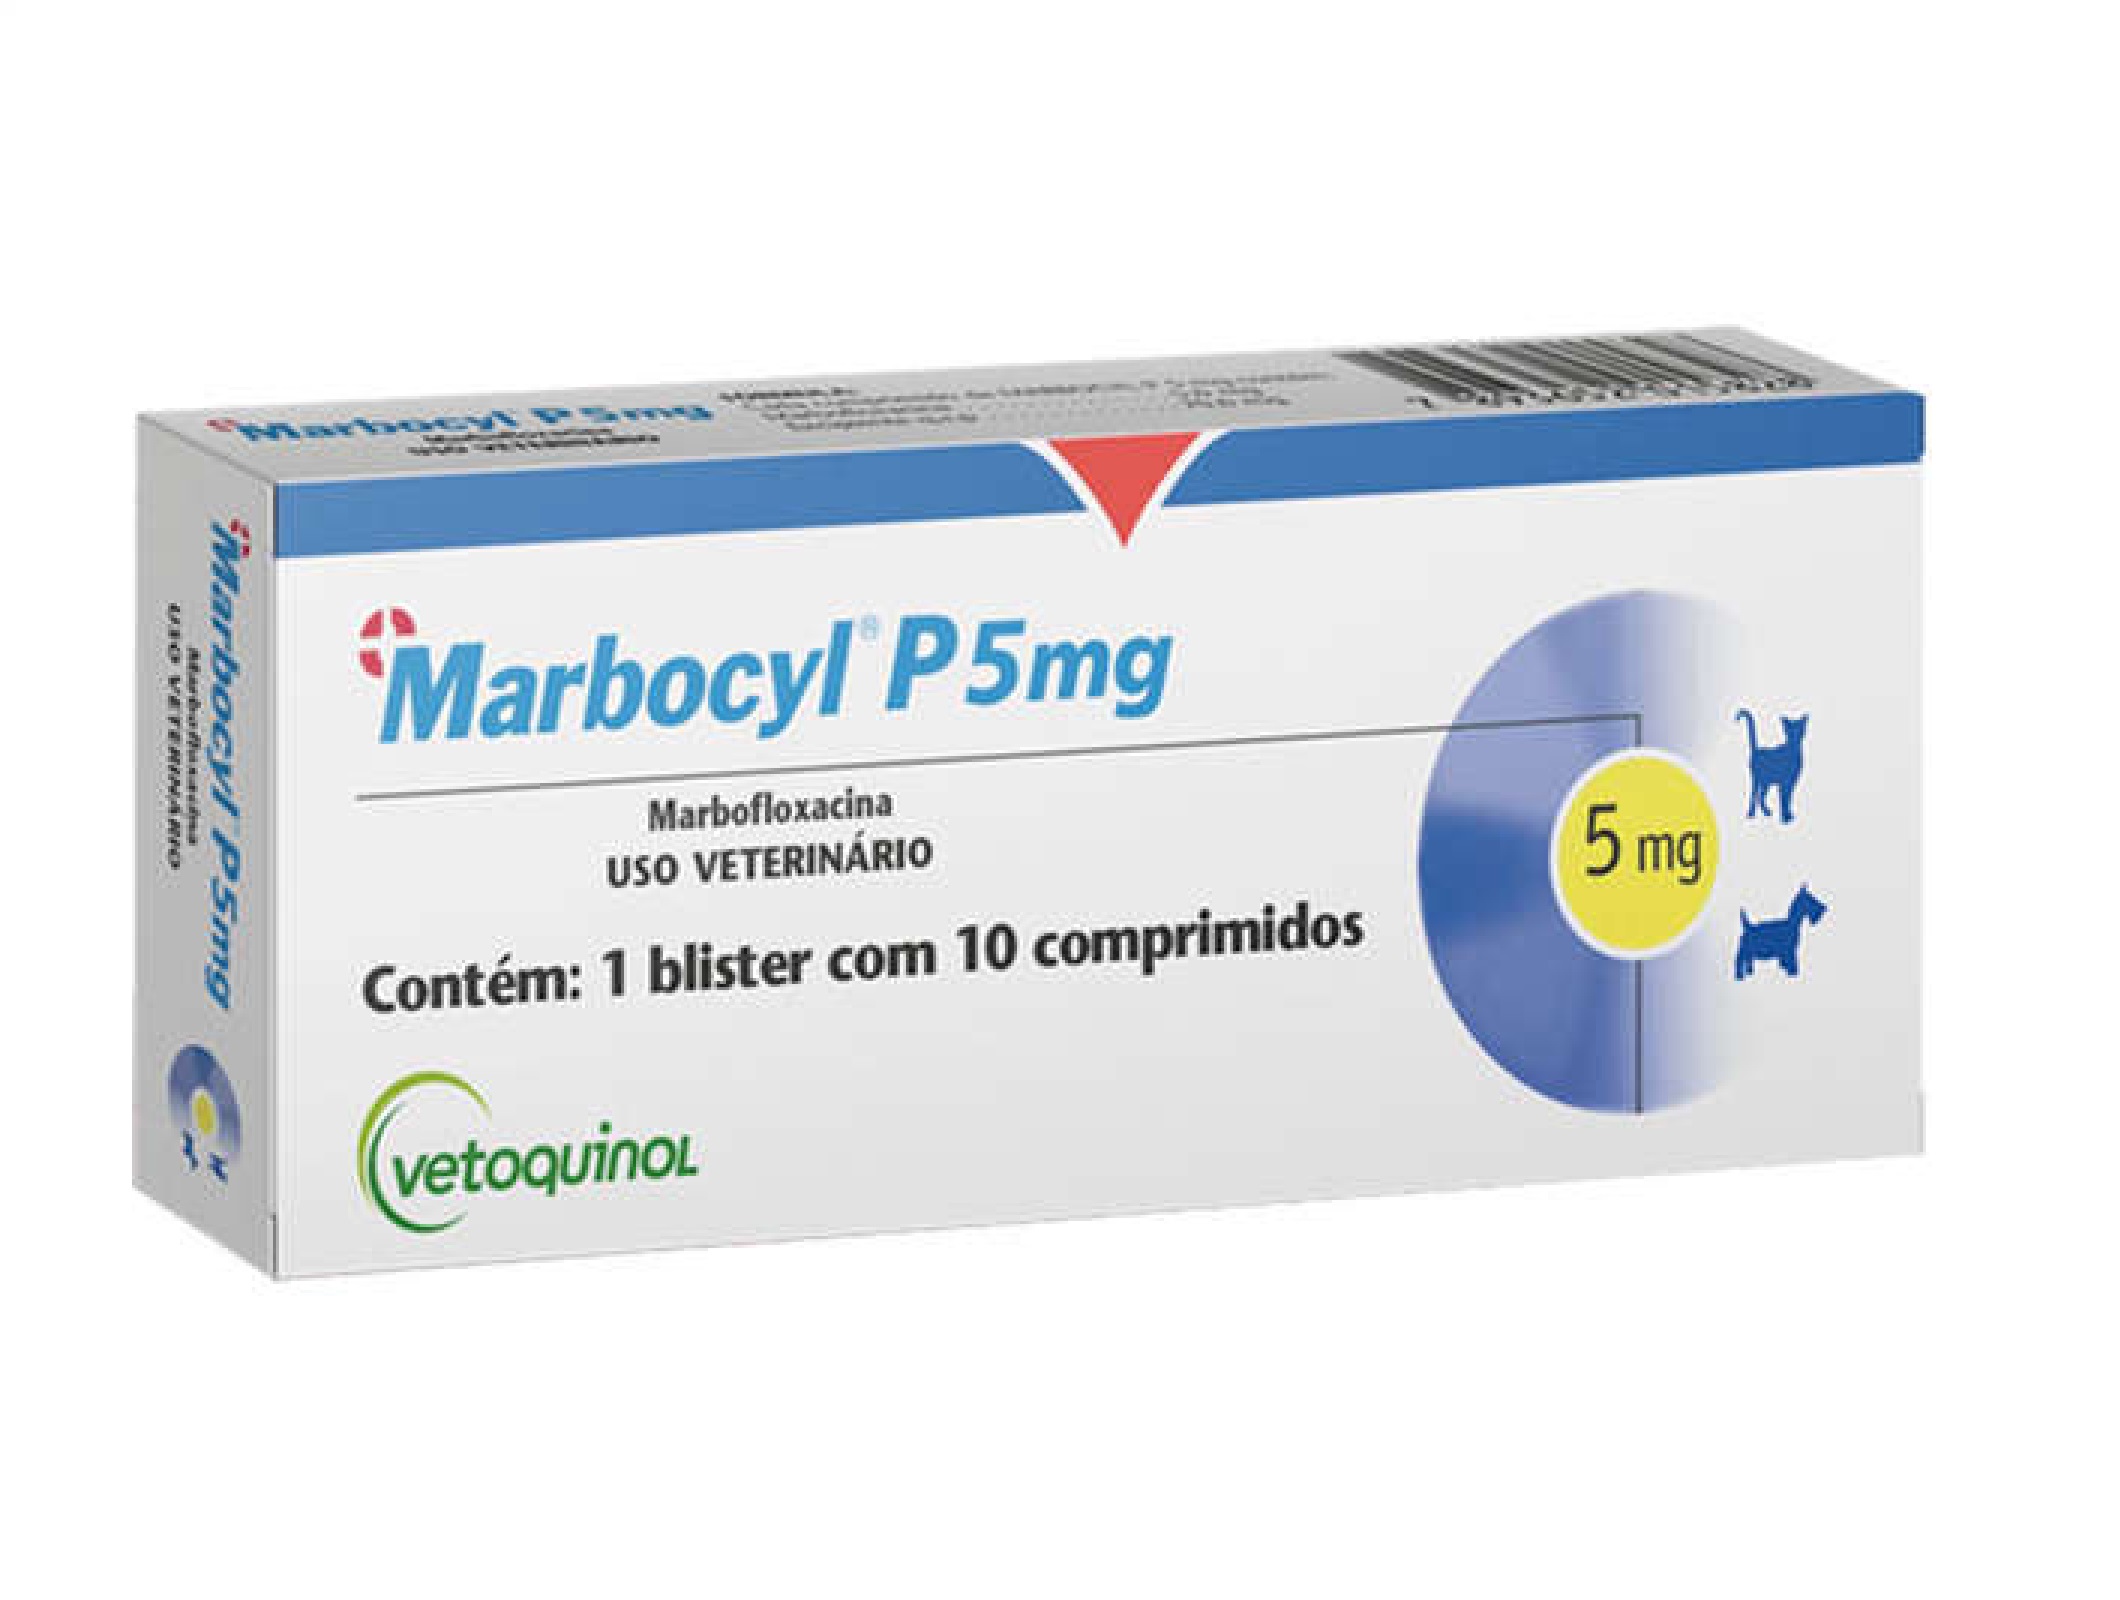 MARBOCYL P 5 MG ANTIBIOTICO VETOQUINOL C/ 10 COMPRIMIDOS